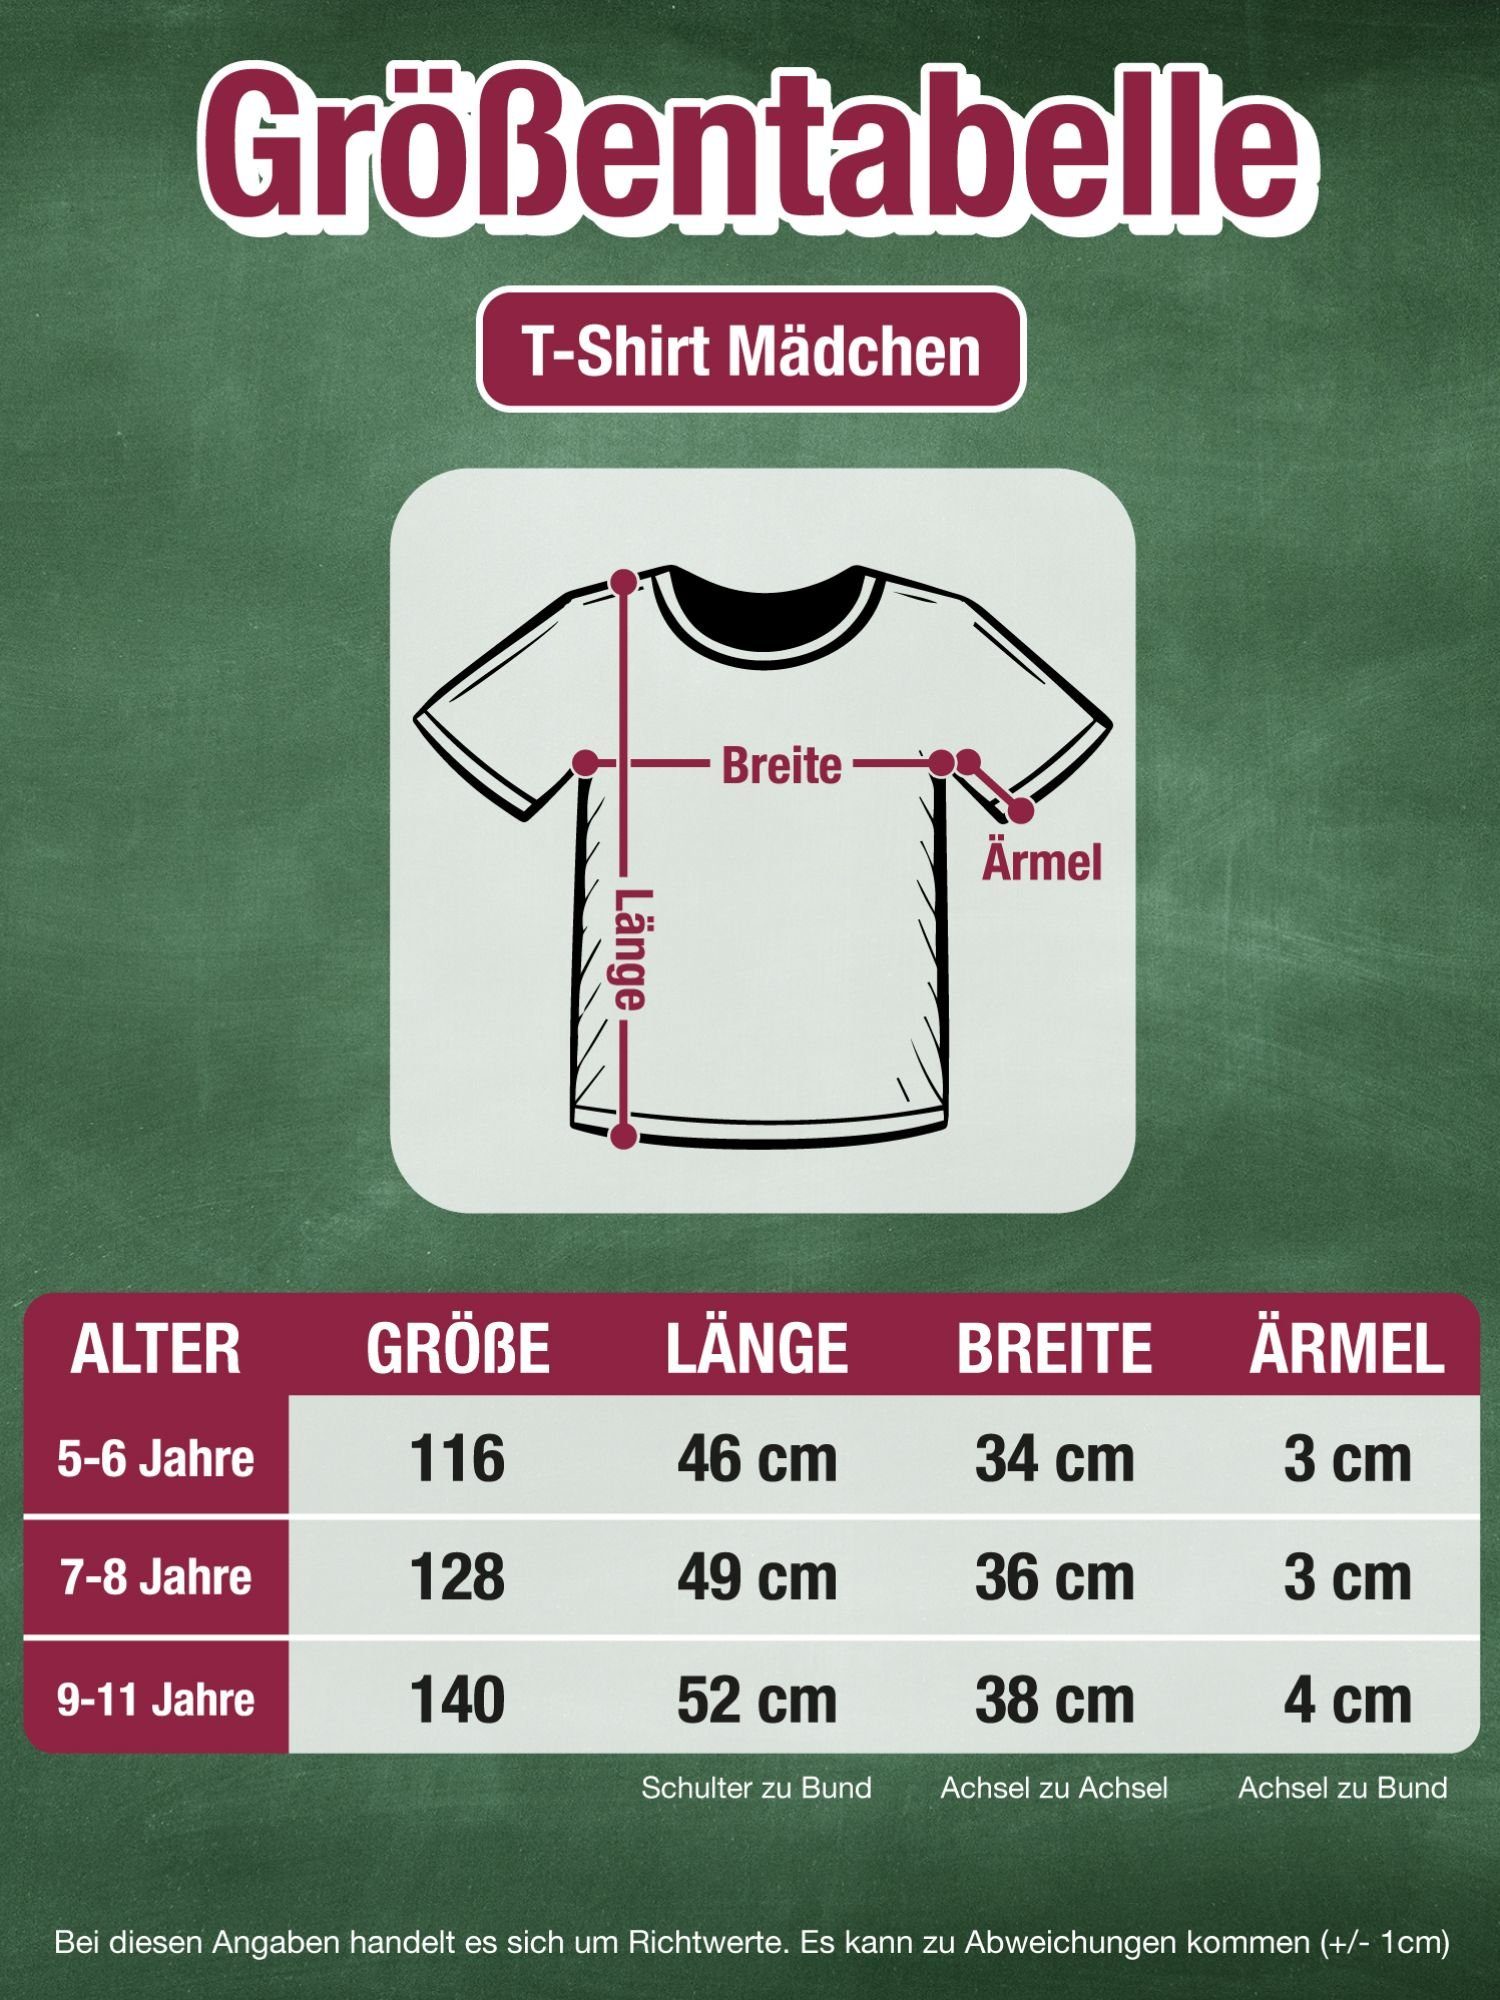 Shirtracer T-Shirt Schulkind 2023 mit 1 Fuchsia Mädchen Einschulung Krone